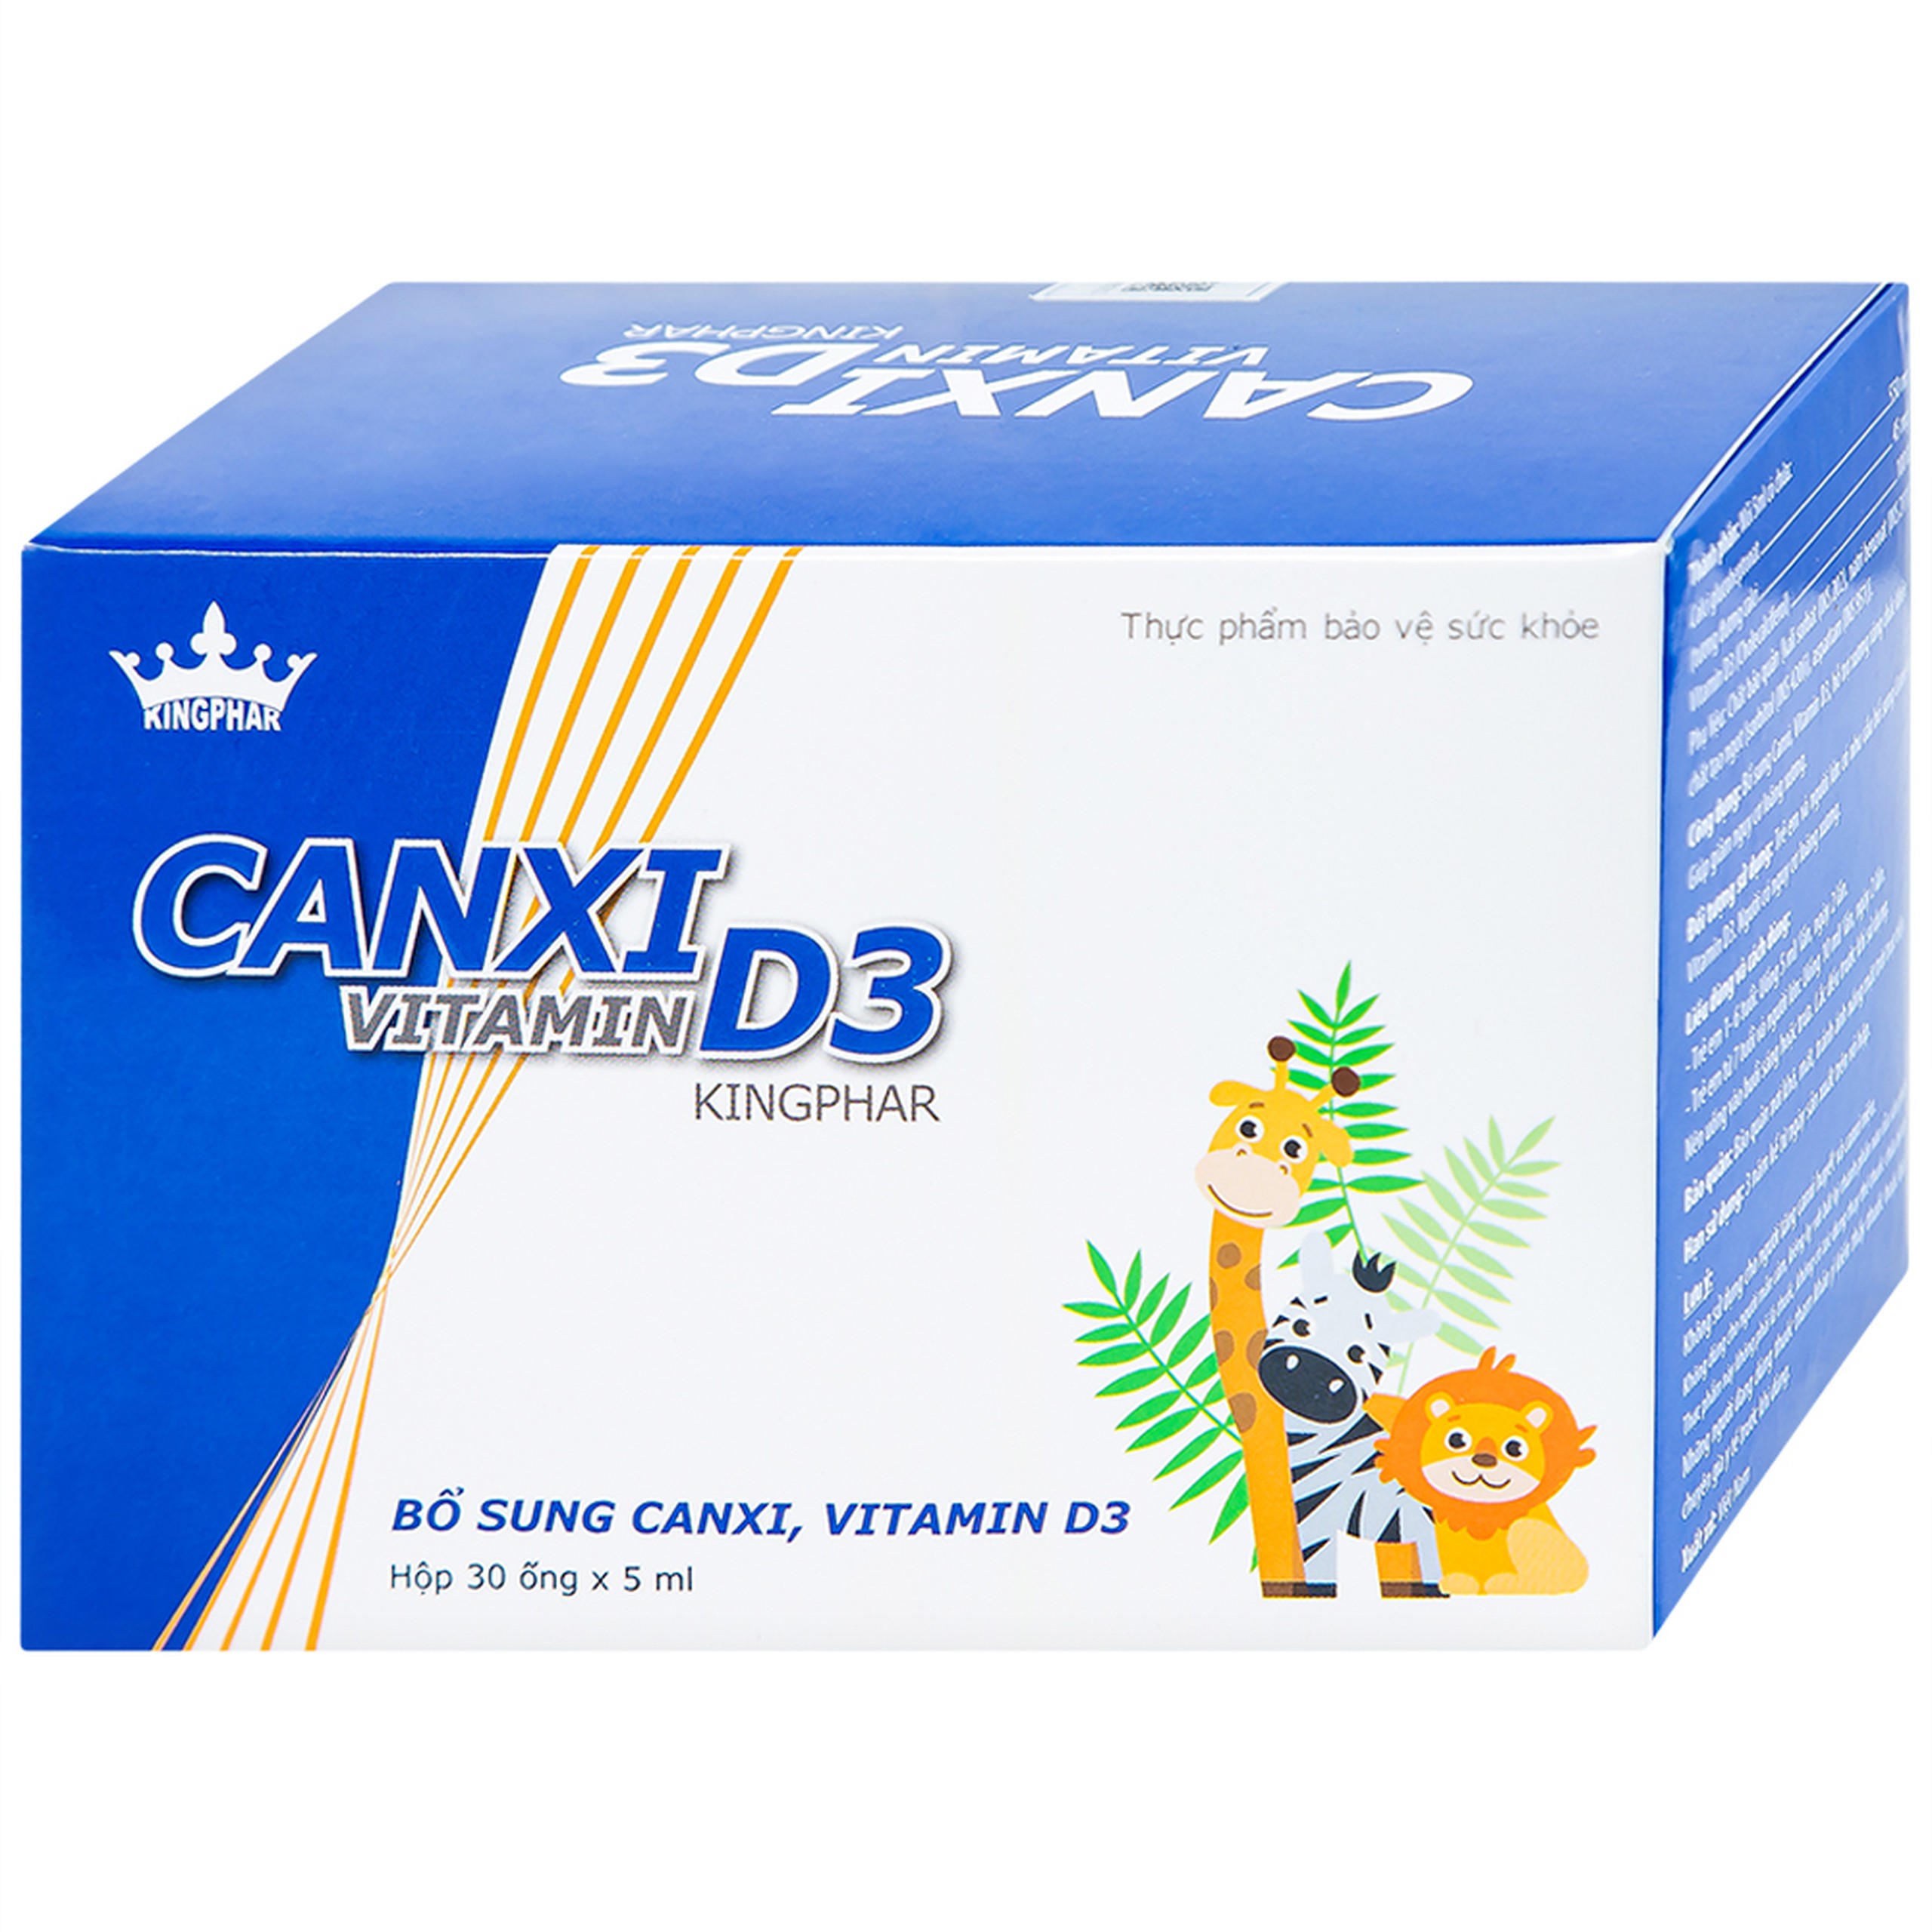 Canxi Vitamin D3 KingPhar bổ sung canxi, vitamin D3 cho cơ thể (30 ống x 5ml)